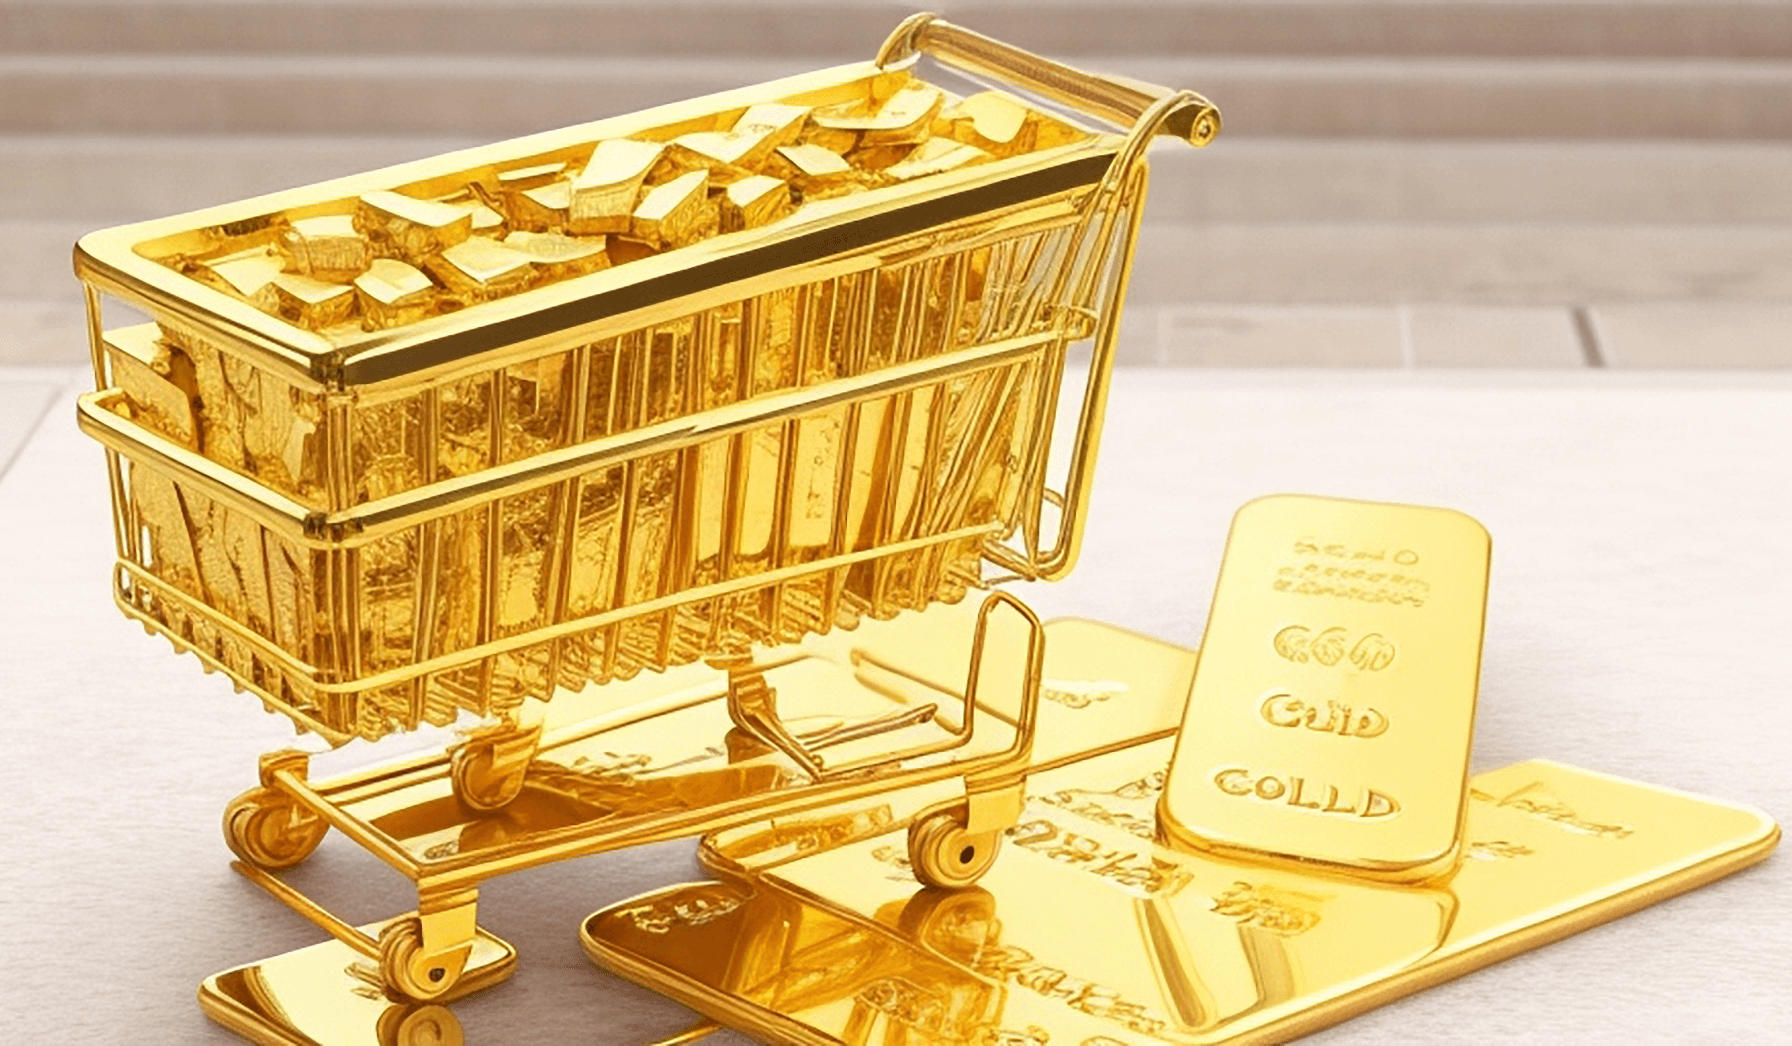 Koszyk zakupowy ze złotem oraz sztabki złota